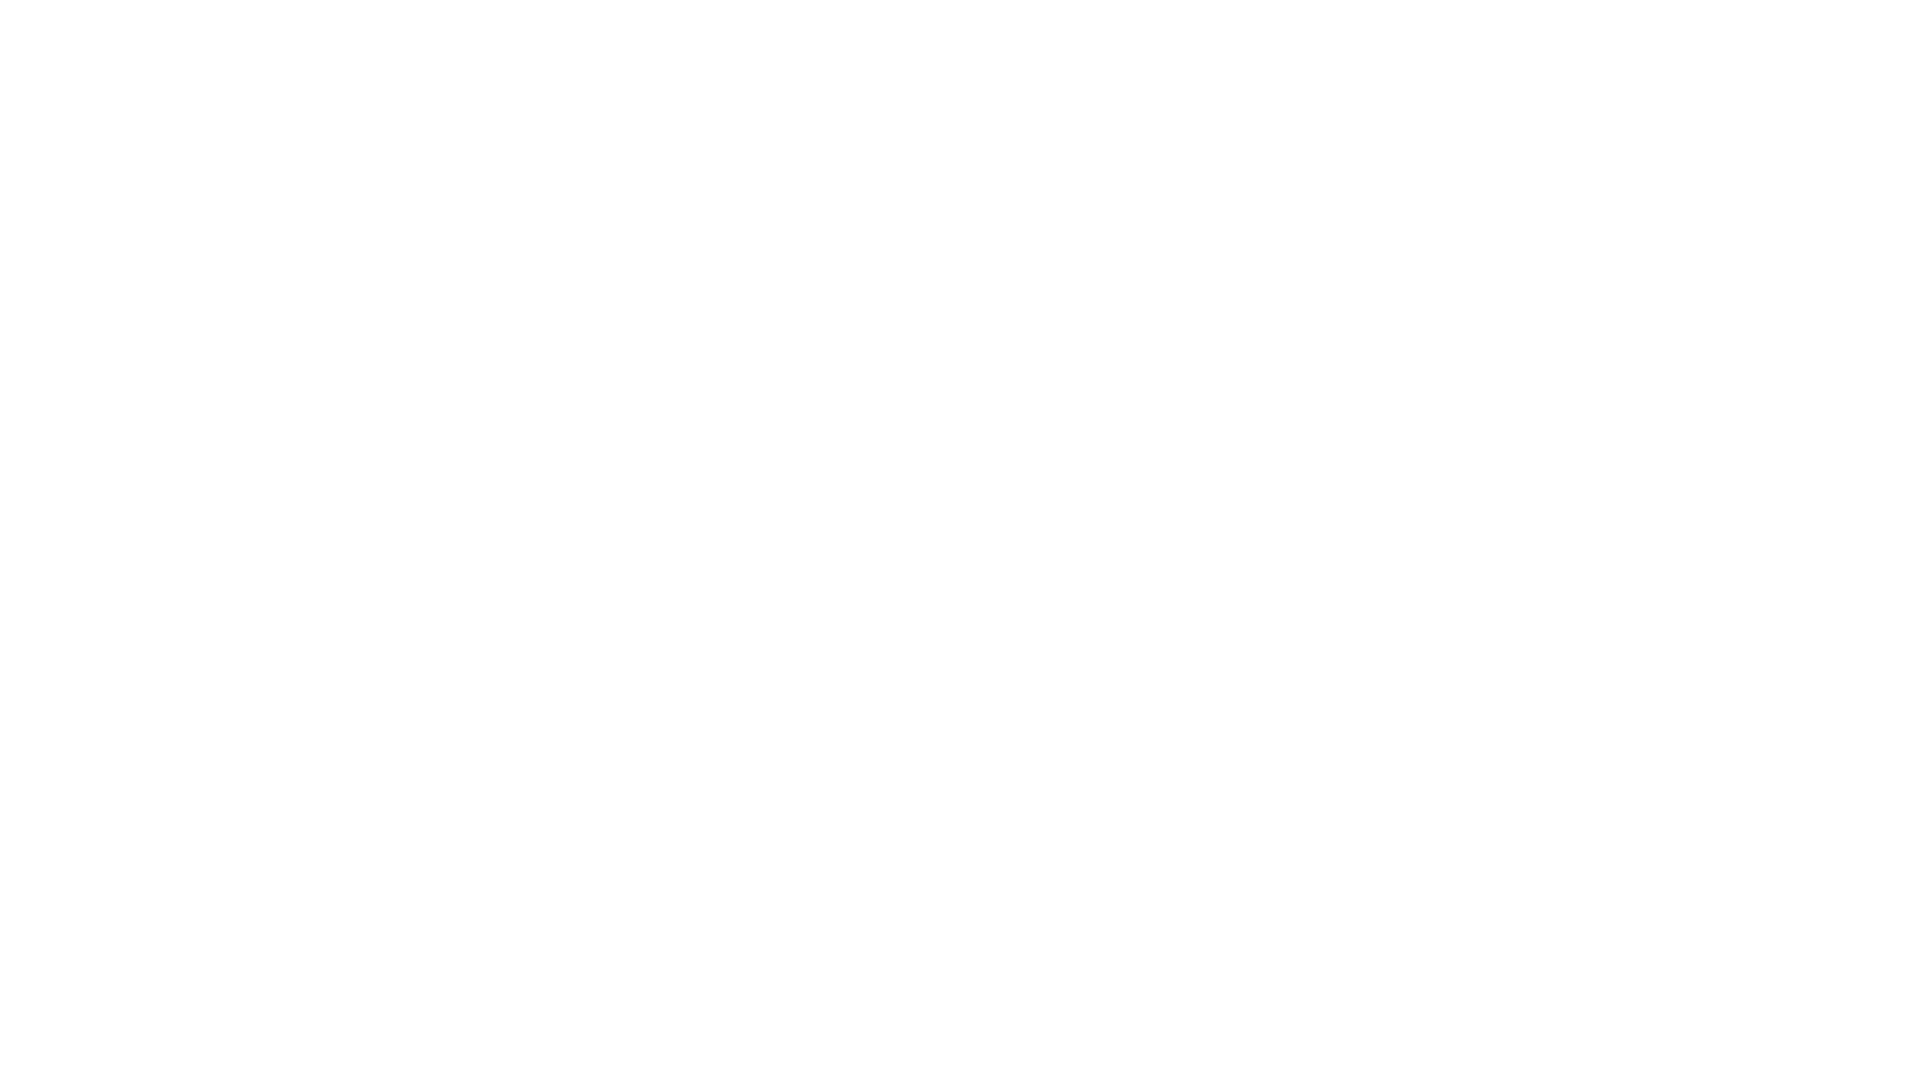 Mannington Commercial.png